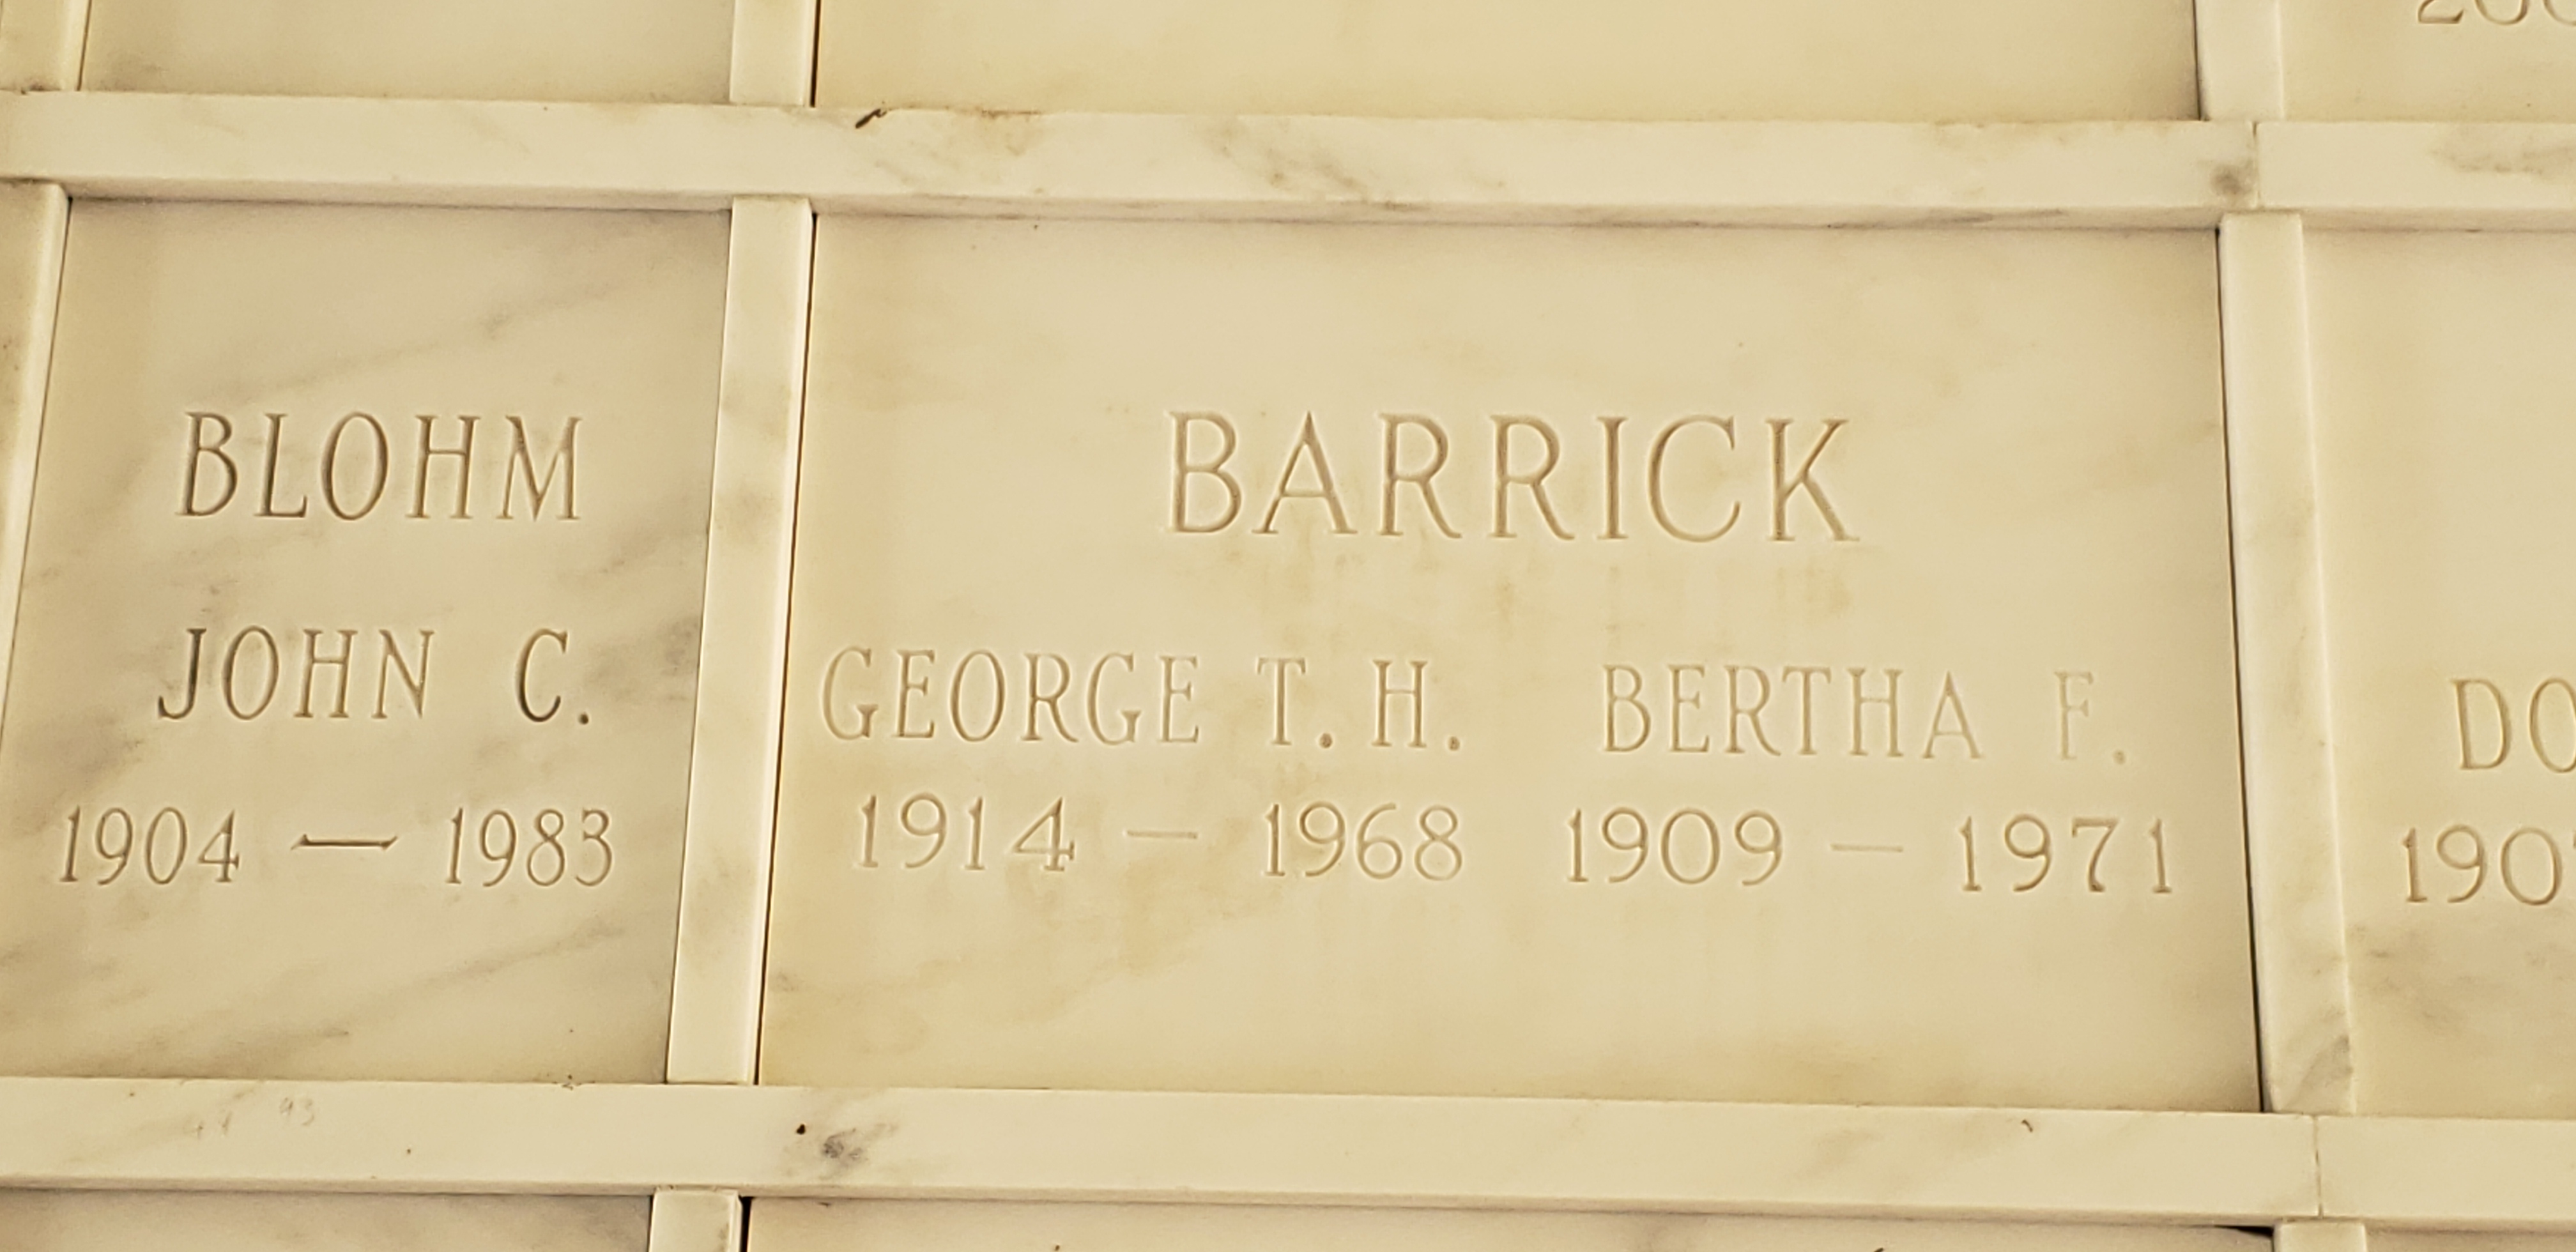 George T H Barrick